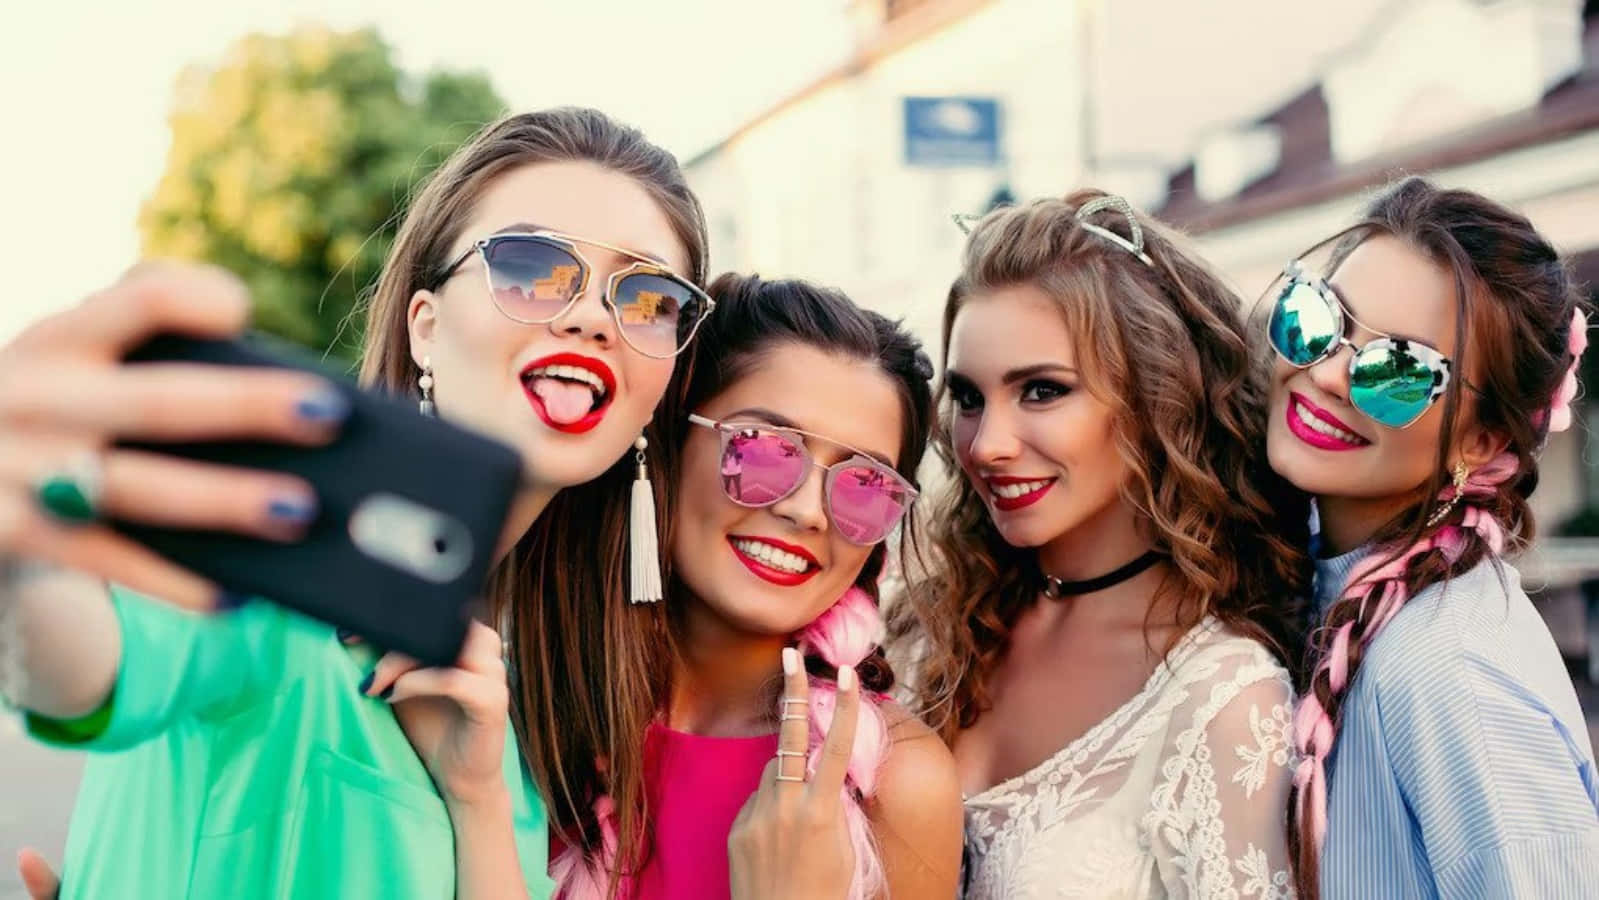 Miglioriamici Selfie Nella Foto Con Gli Occhiali Da Sole